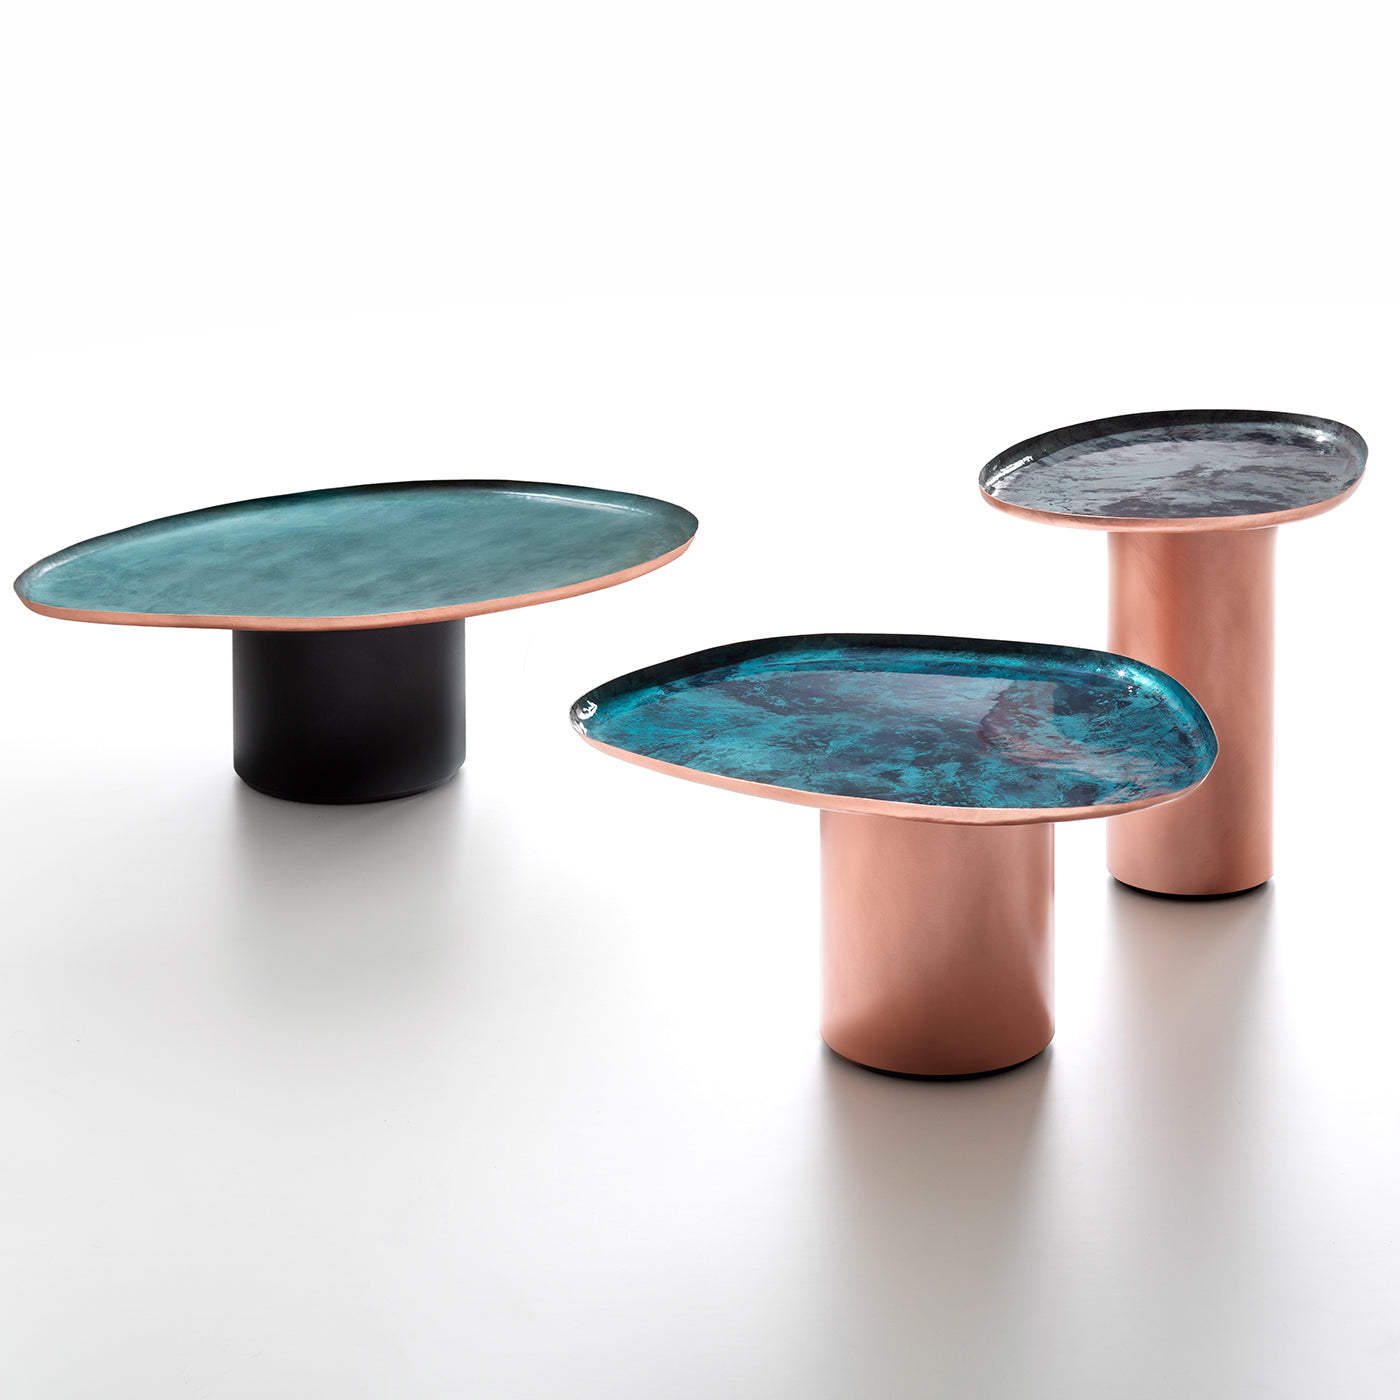 Drops Tall Side Table by Zanellato & Bortotto - Alternative view 1